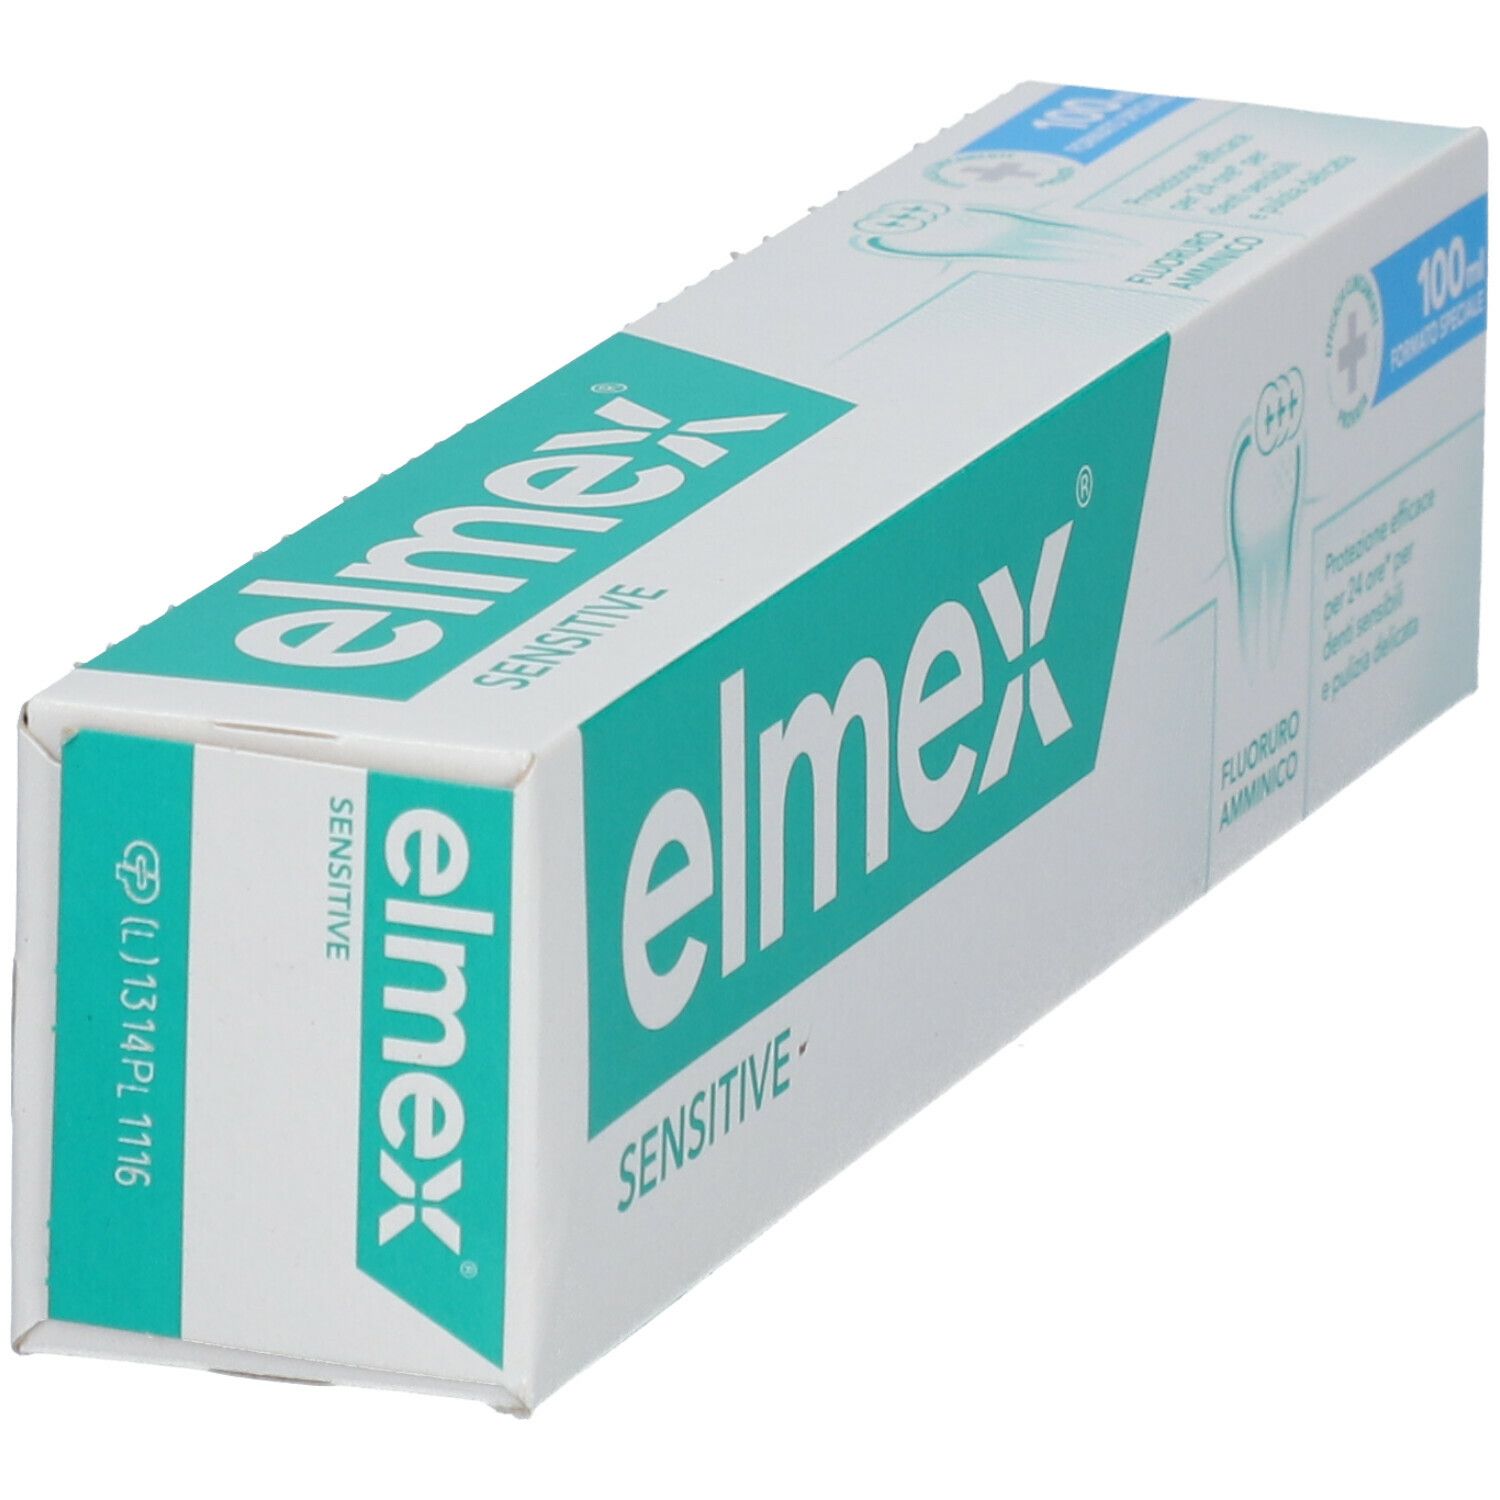 Elmex® Sensitive Con Fluoro Amminico